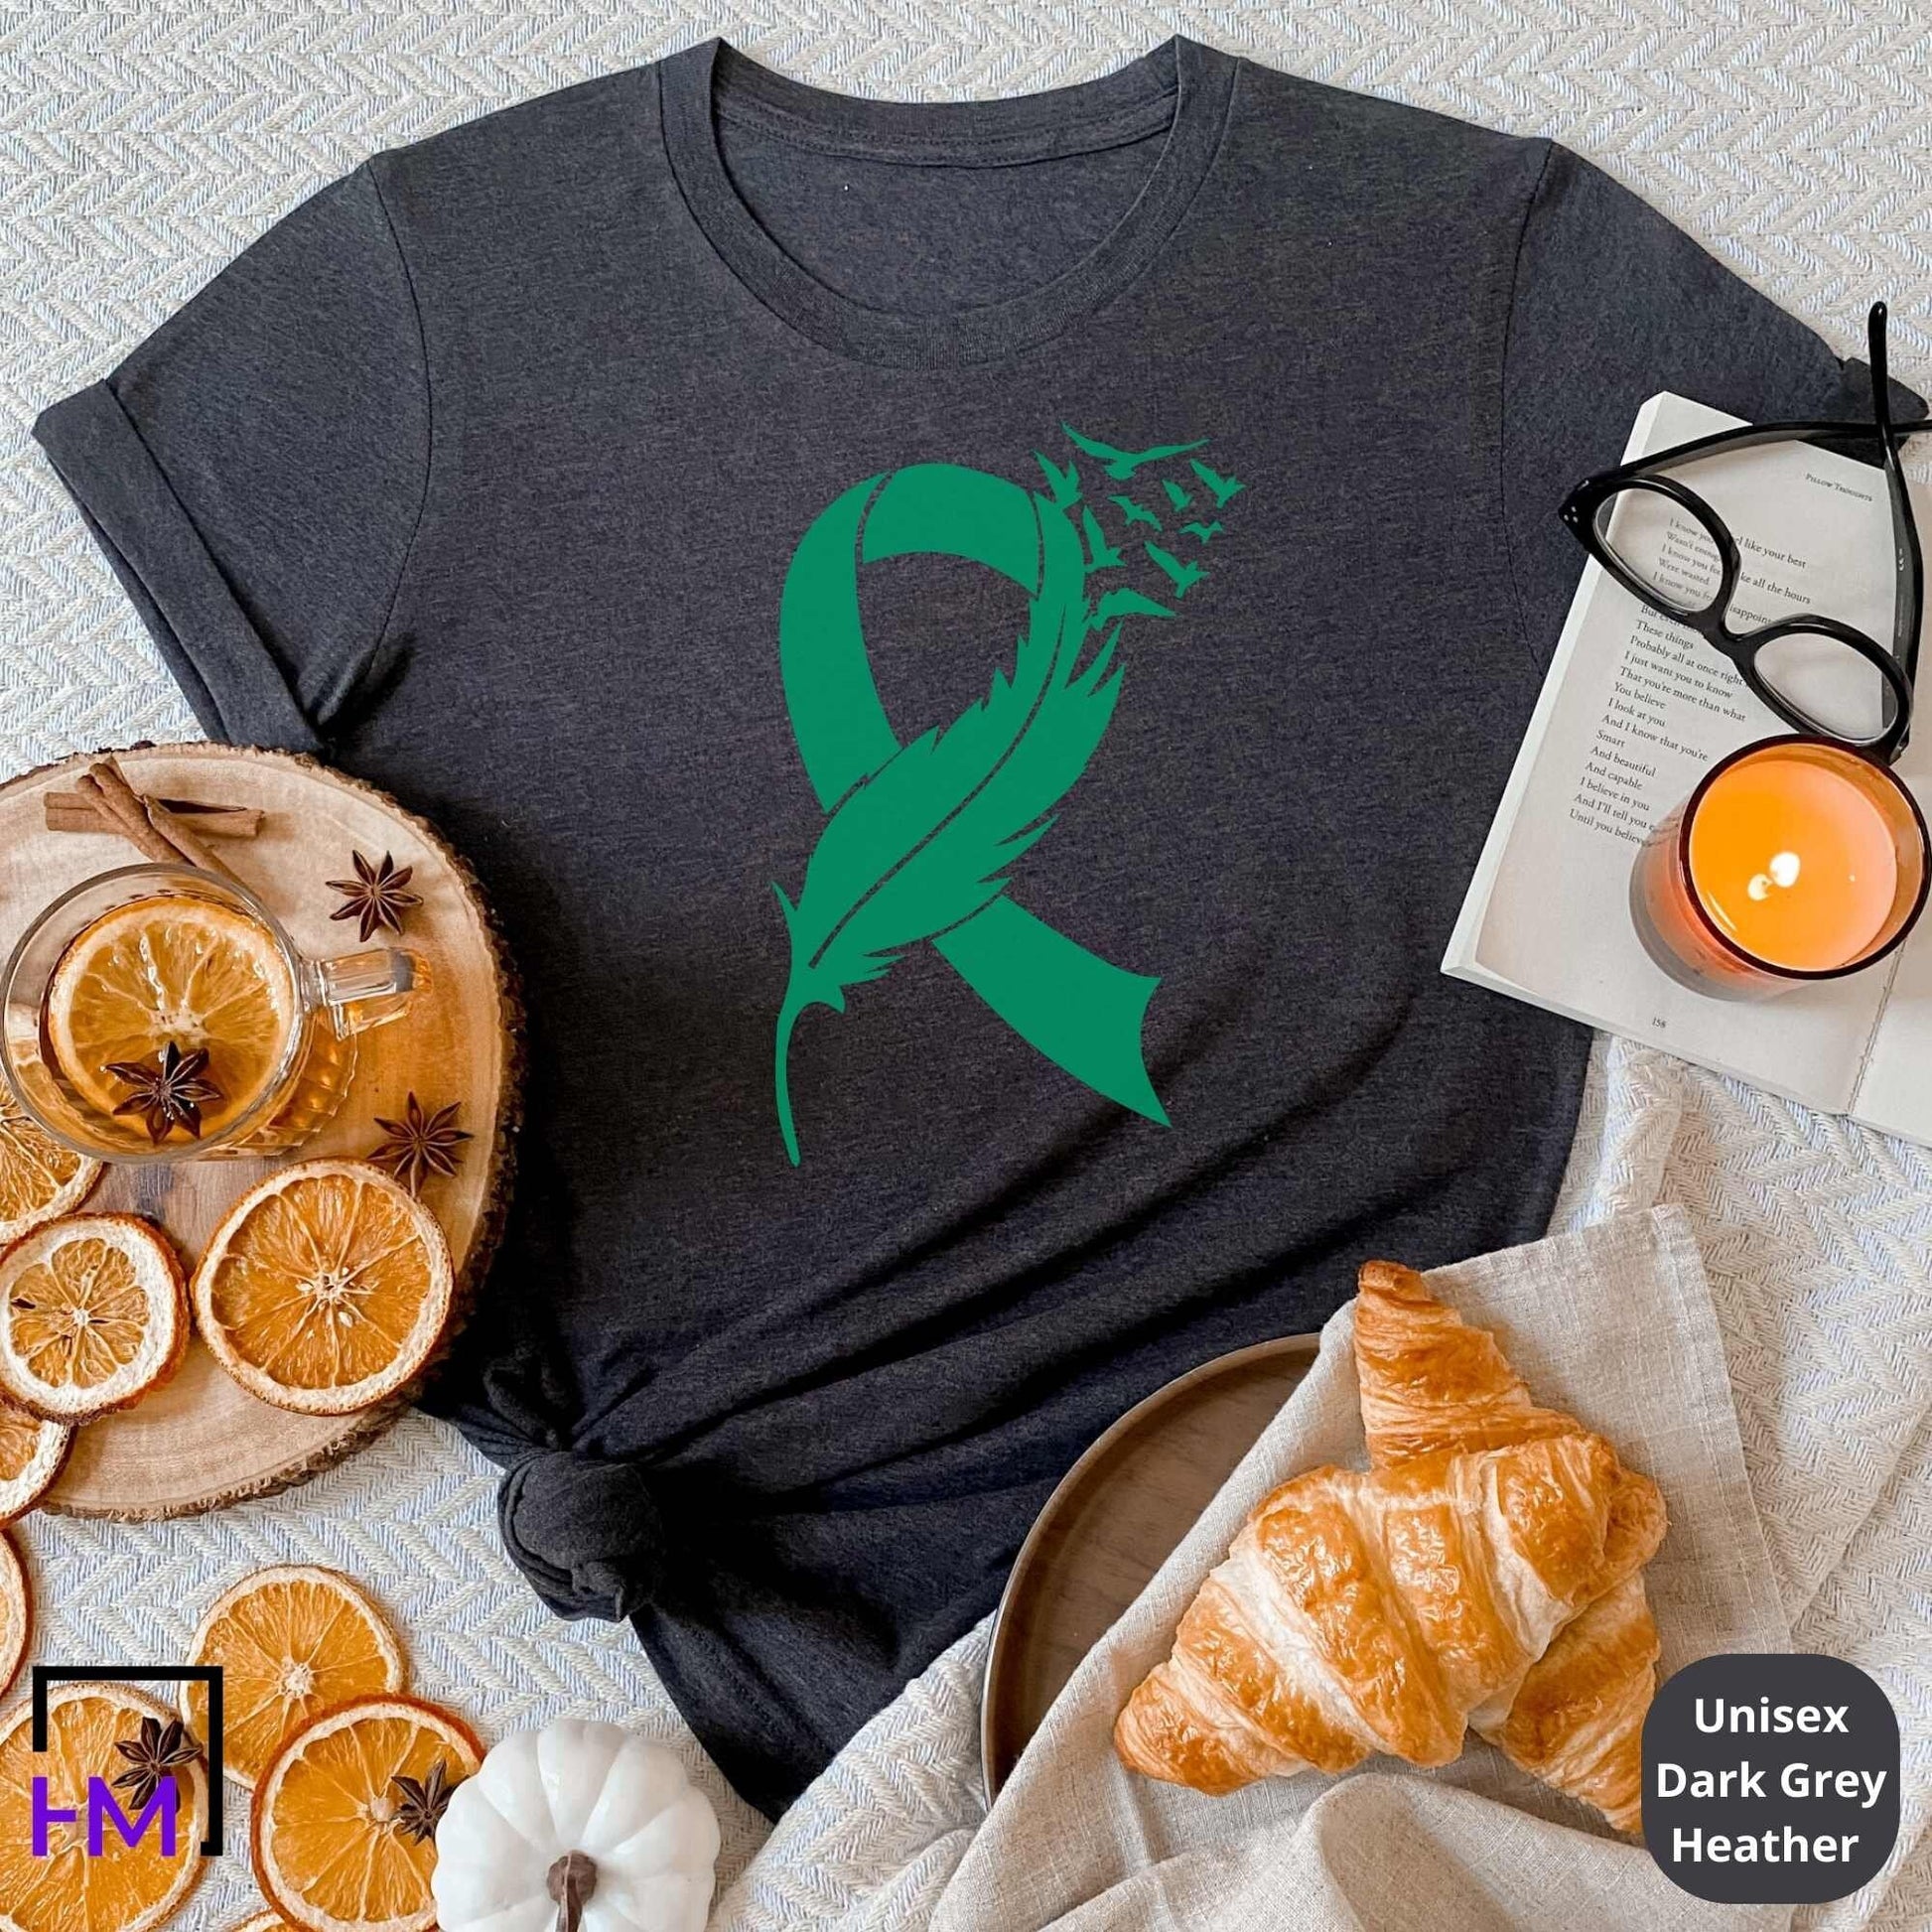 Liver Cancer Shirt, Liver Cancer Warrior Gift, Liver Cancer Green Ribbon Shirt, Liver Cancer Awareness Shirt, Cancer Fighter Gifts, Support HMDesignStudioUS